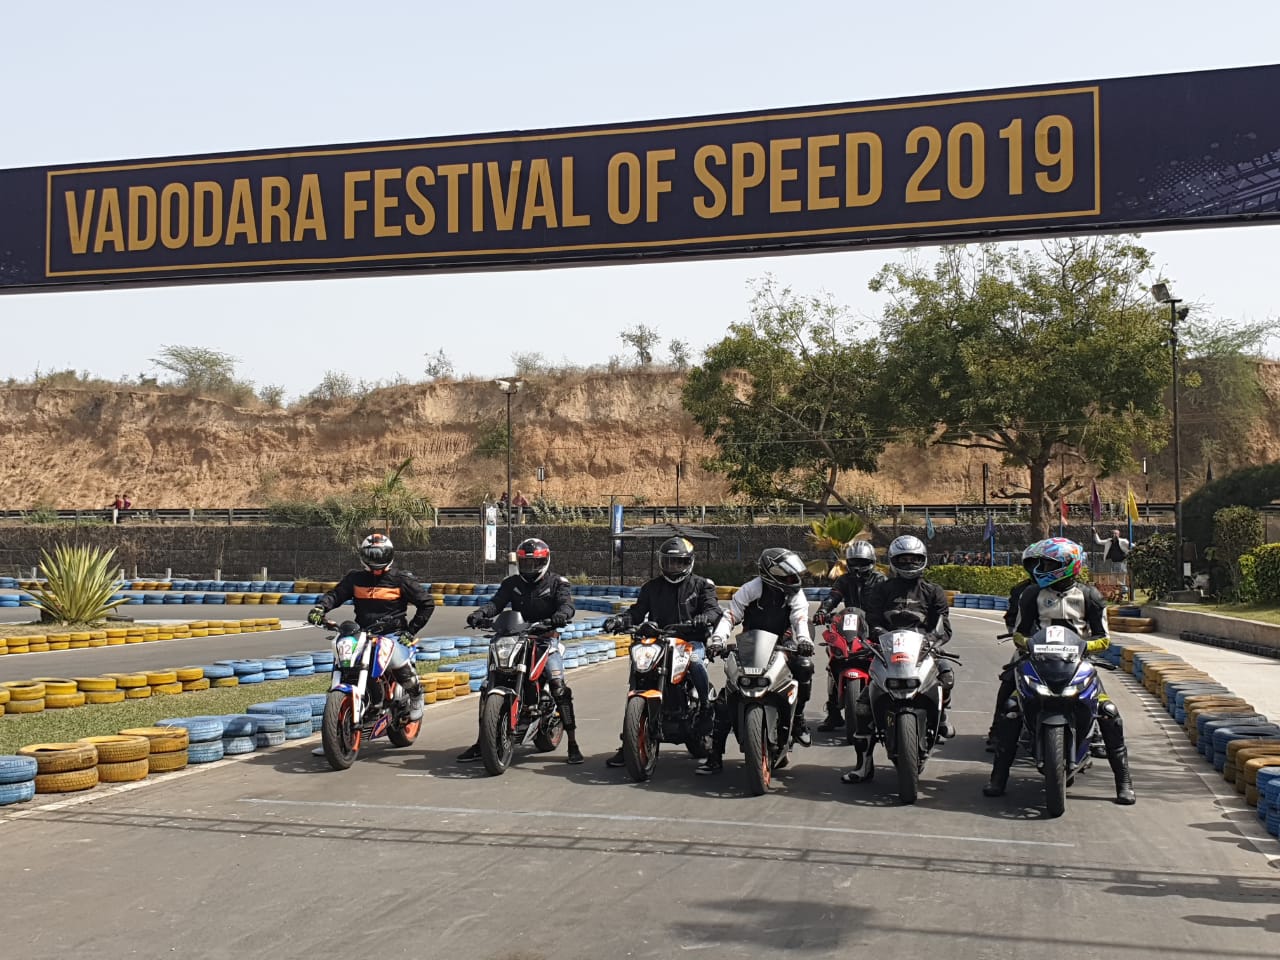 Vadodara witness Festival of Speed this weekend